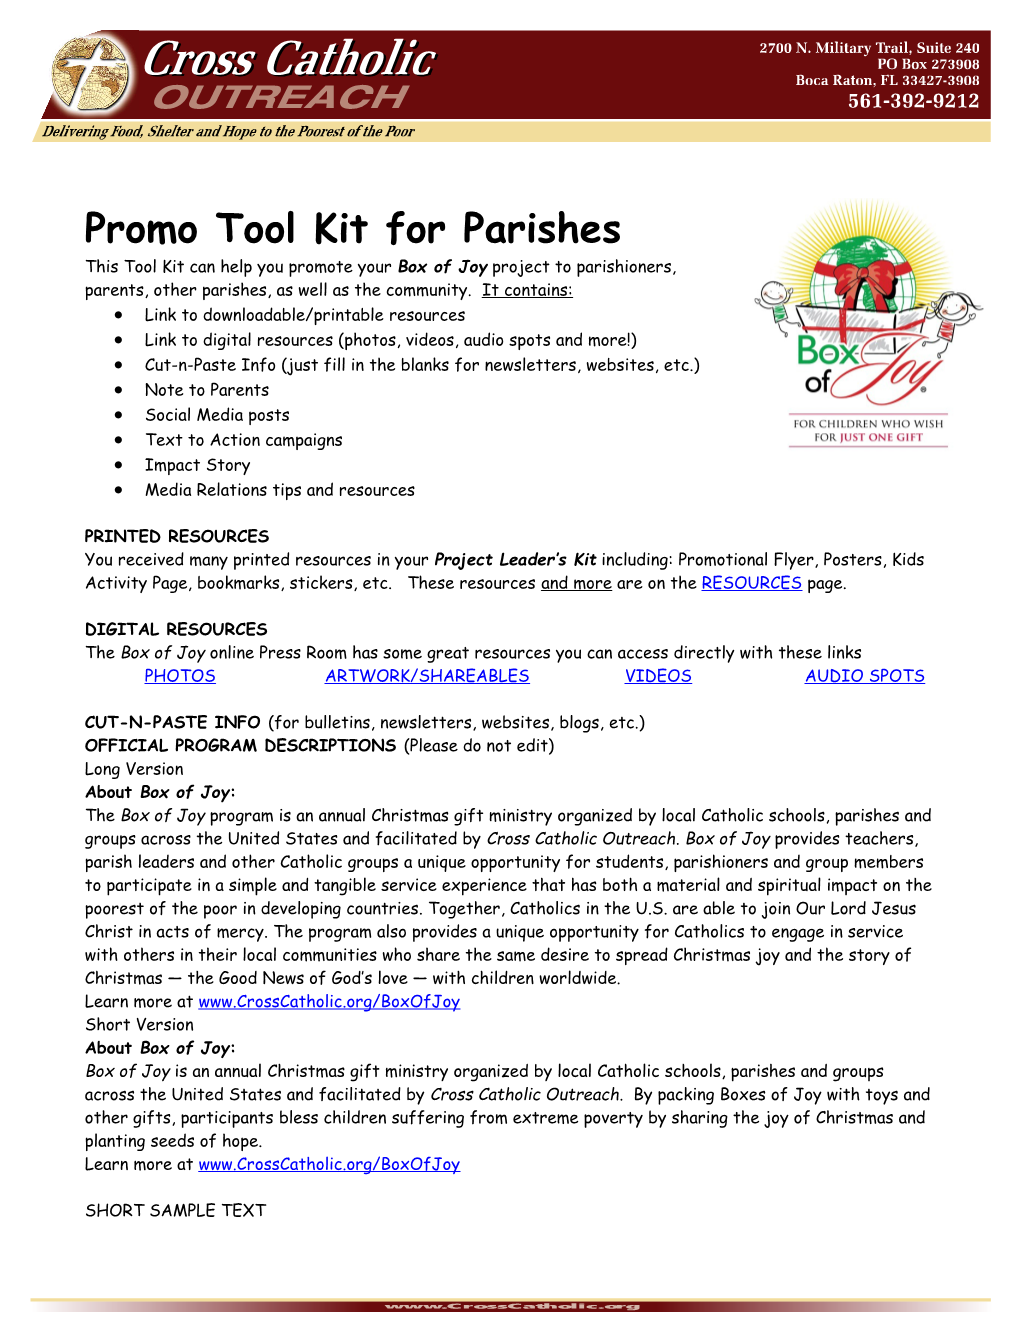 Promo Tool Kit for Parishes